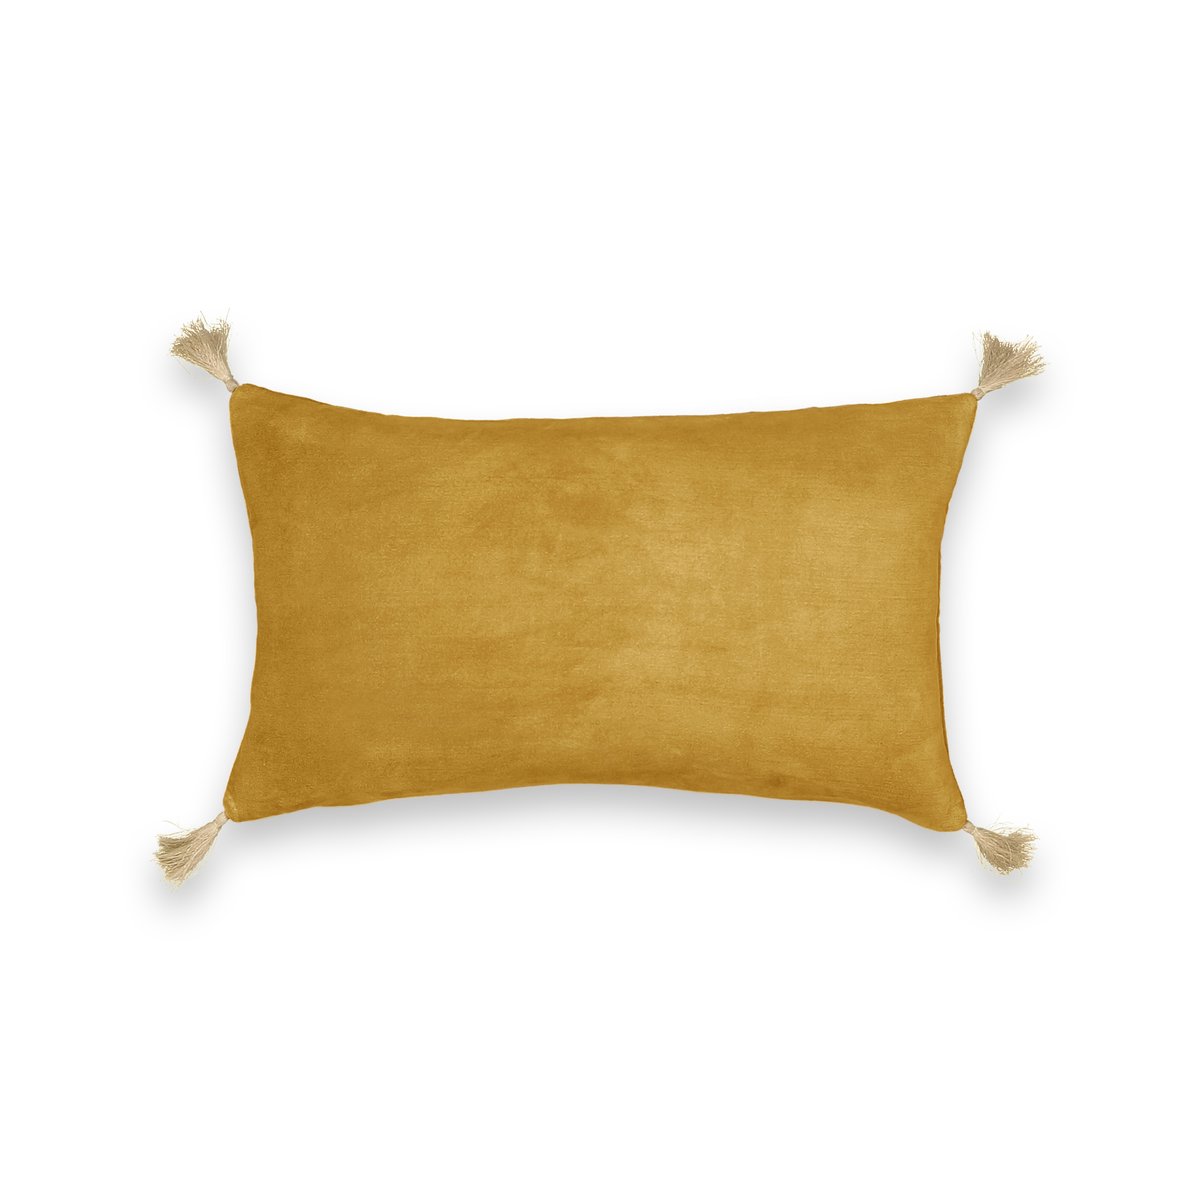 Чехол LaRedoute На подушку велюровый Cacolet 50 x 30 см желтый, размер 50 x 30 см - фото 2